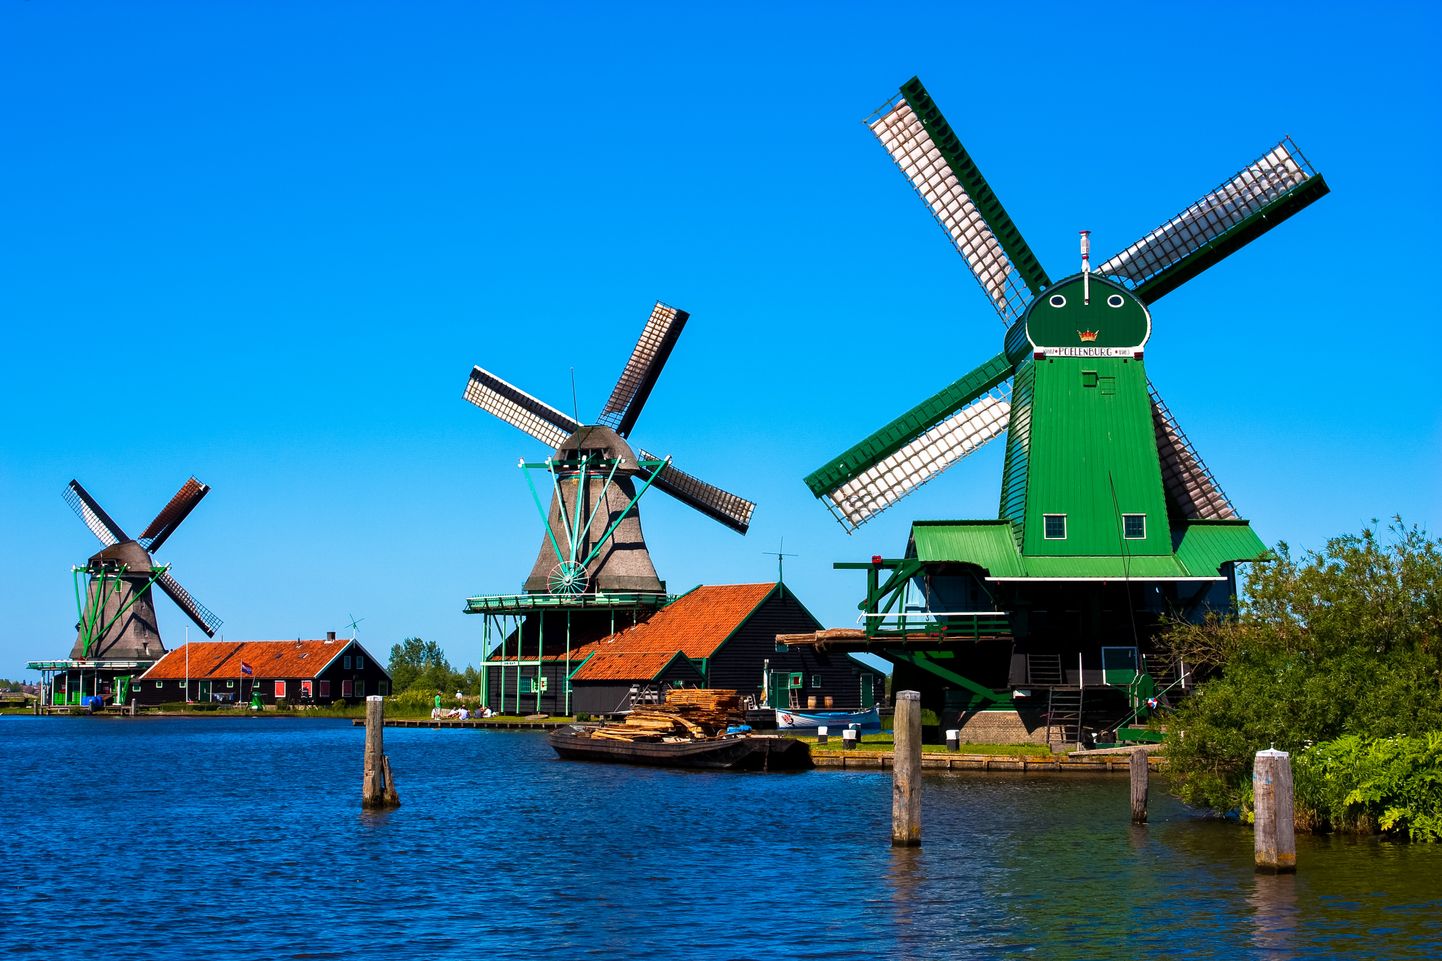 Hollandi tuuleveskid